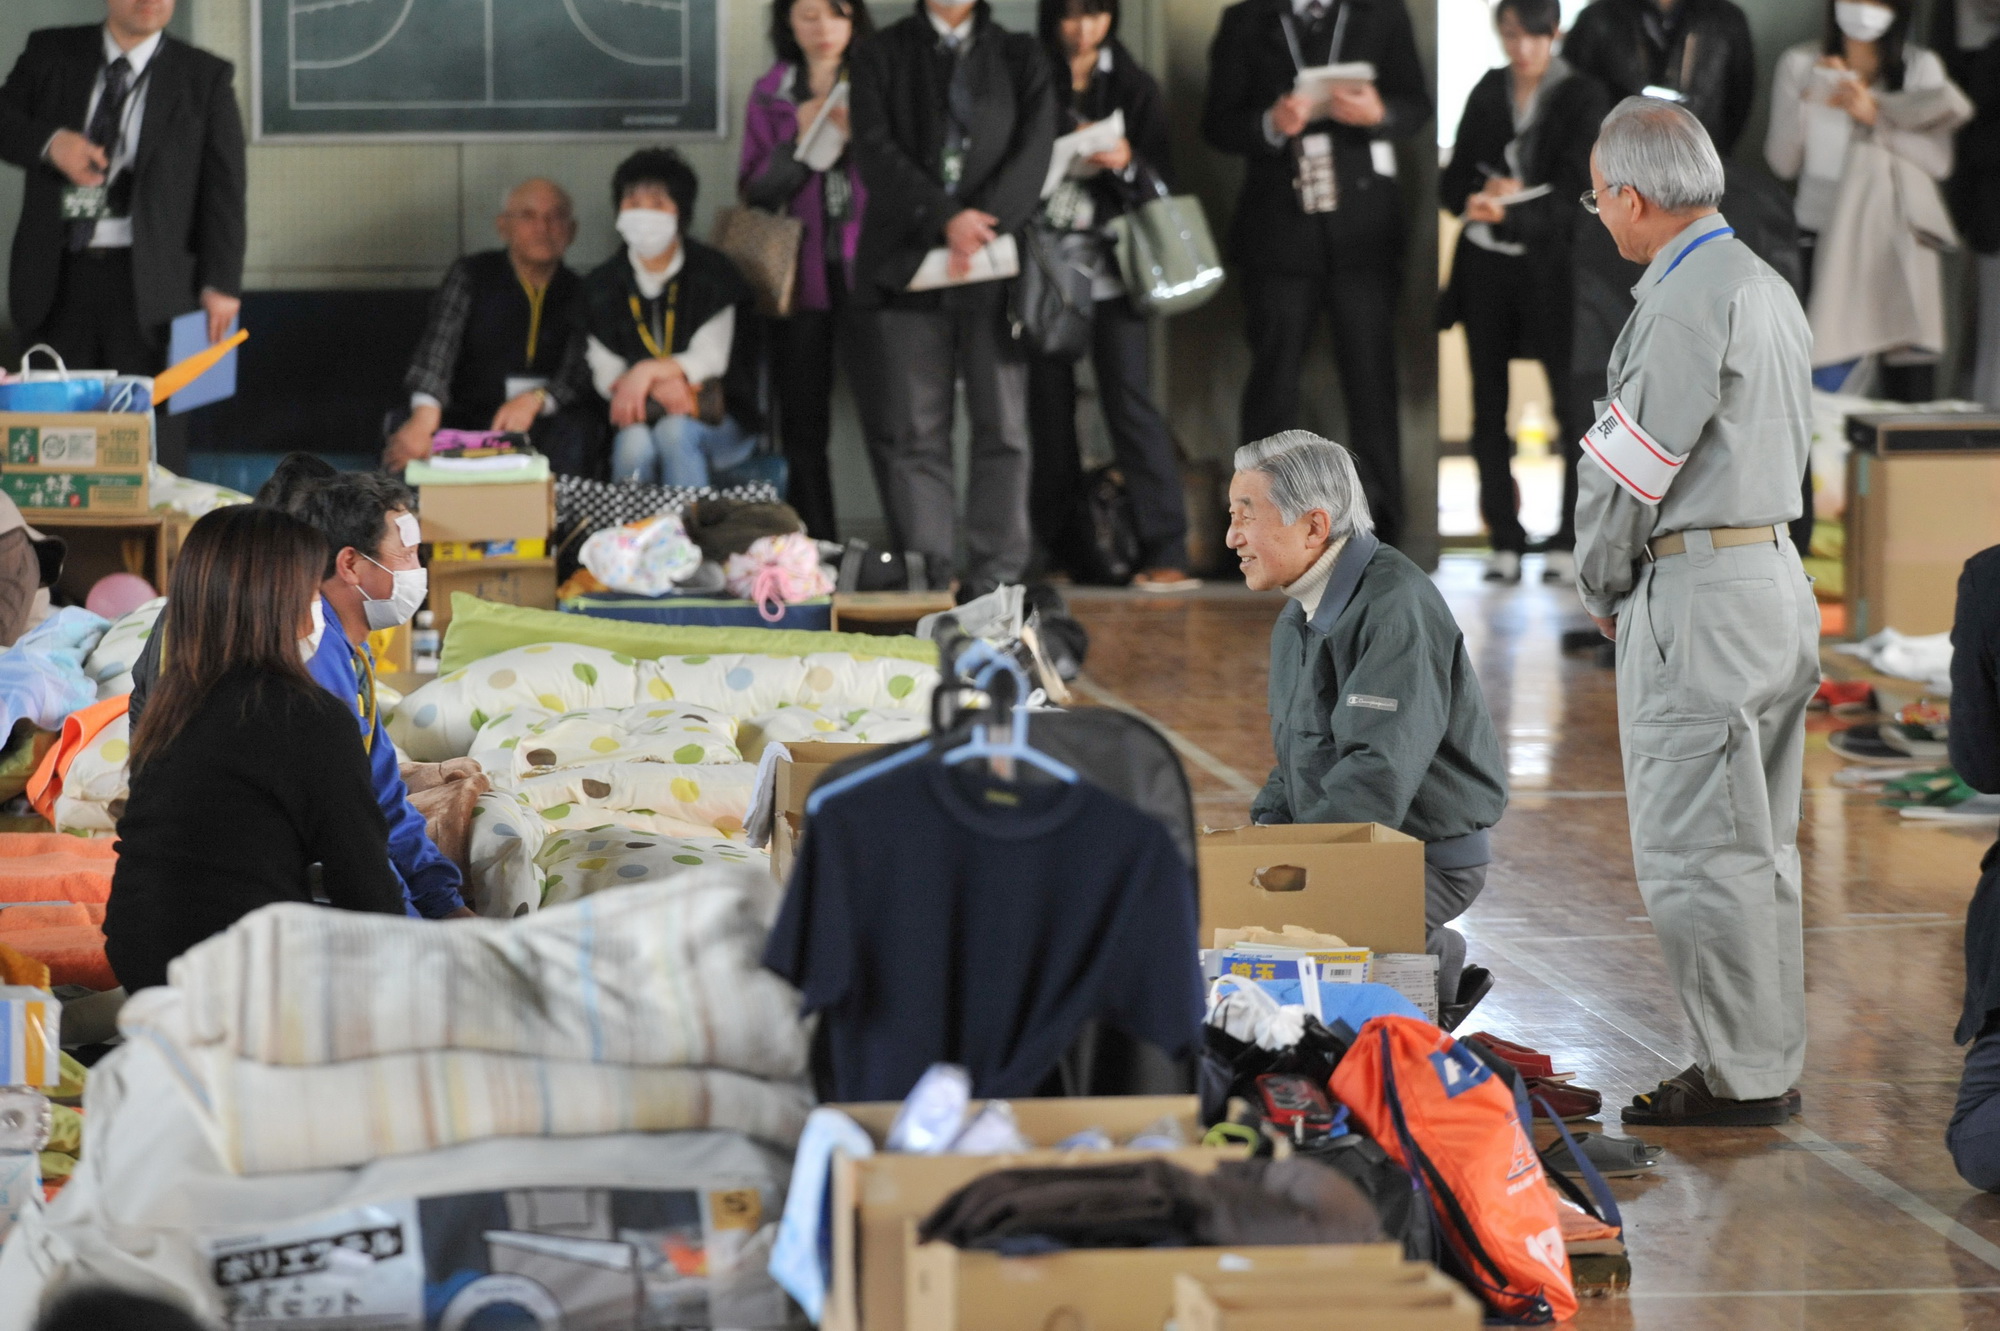 Nhật Hoàng Akihito thăm hỏi các nạn nhân vụ động đất tháng 4/2011. (Nguồn: Sách ảnh Their Majesties the Emperor and Empress of Japan)